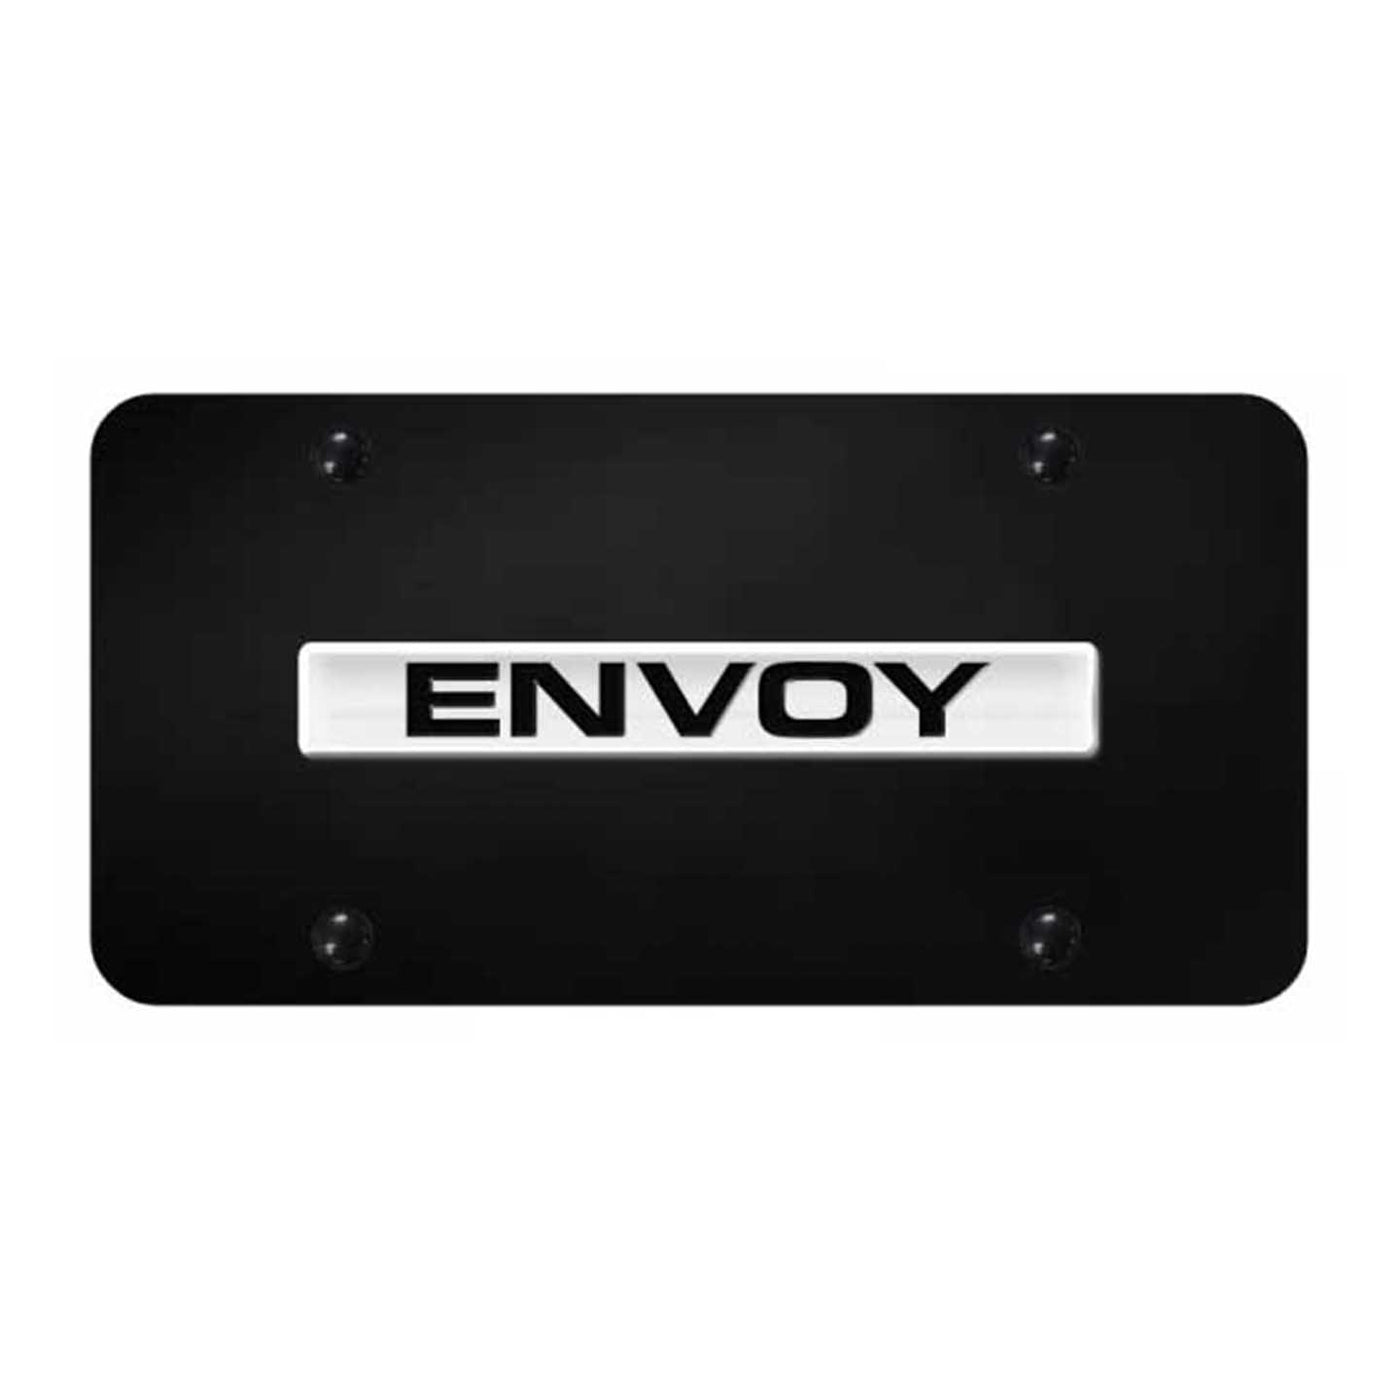 Envoy Name License Plate - Chrome on Black